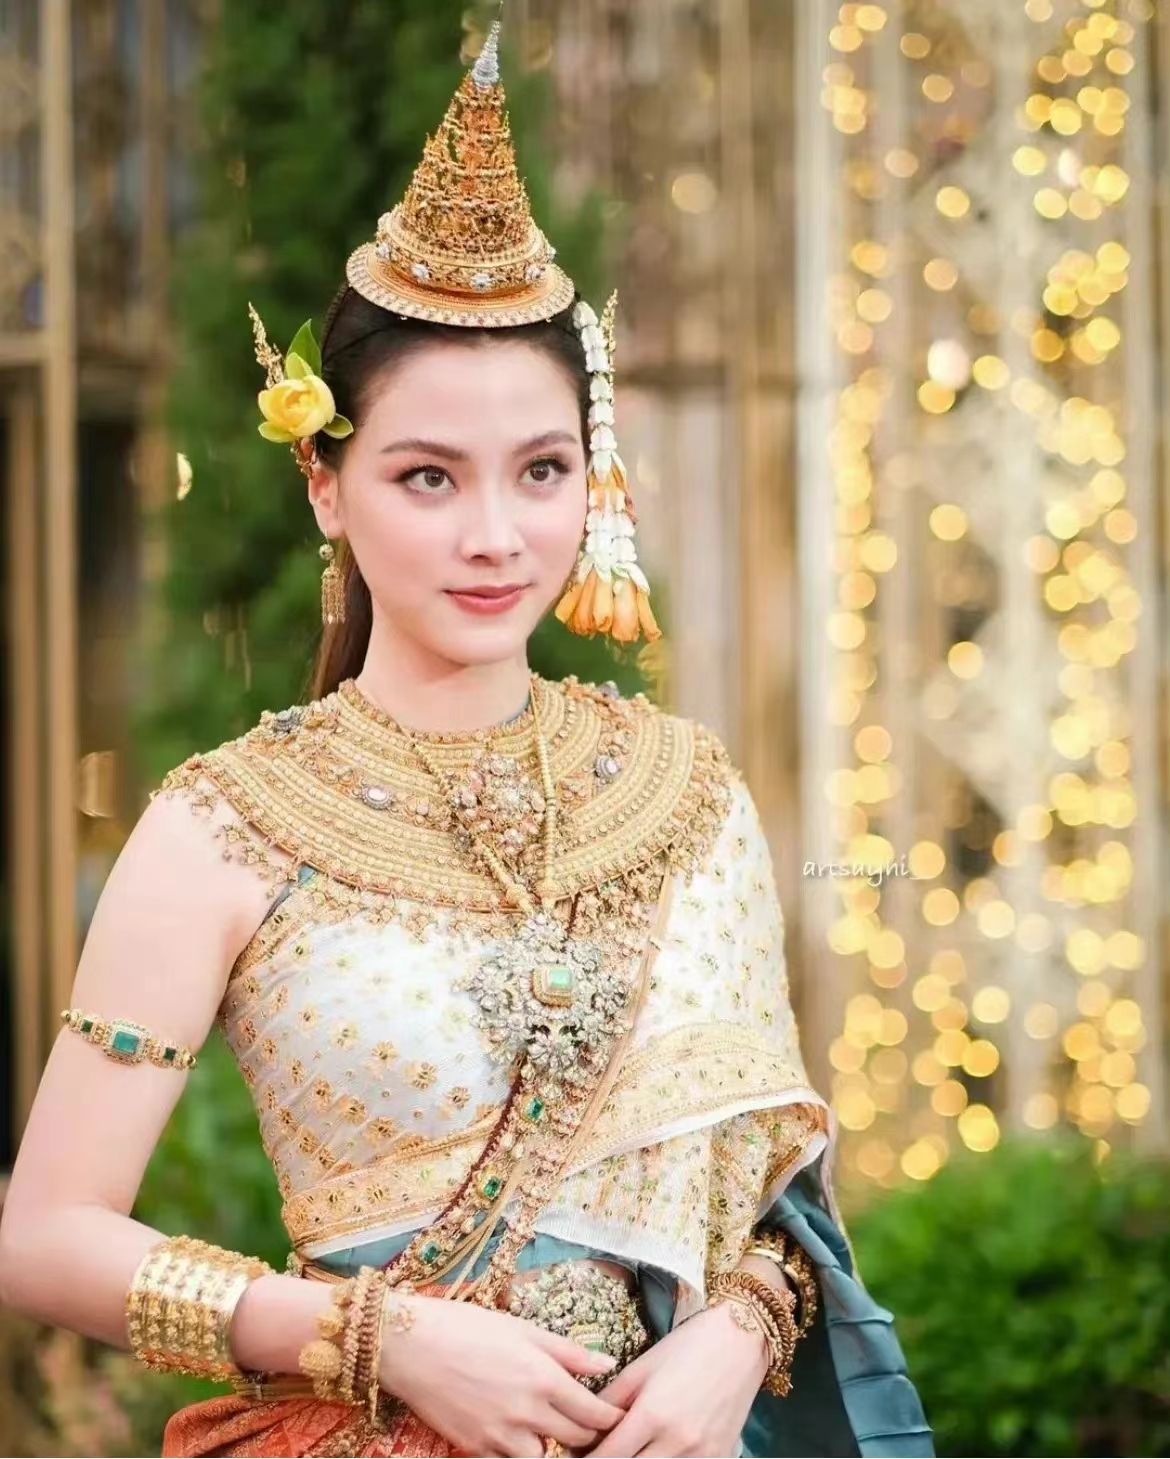 泰国传统服装的美丽的泰国女孩 库存图片. 图片 包括有 金黄, 伙计, 珠宝, 快乐, 发芽, 礼貌, 装饰品 - 72235715